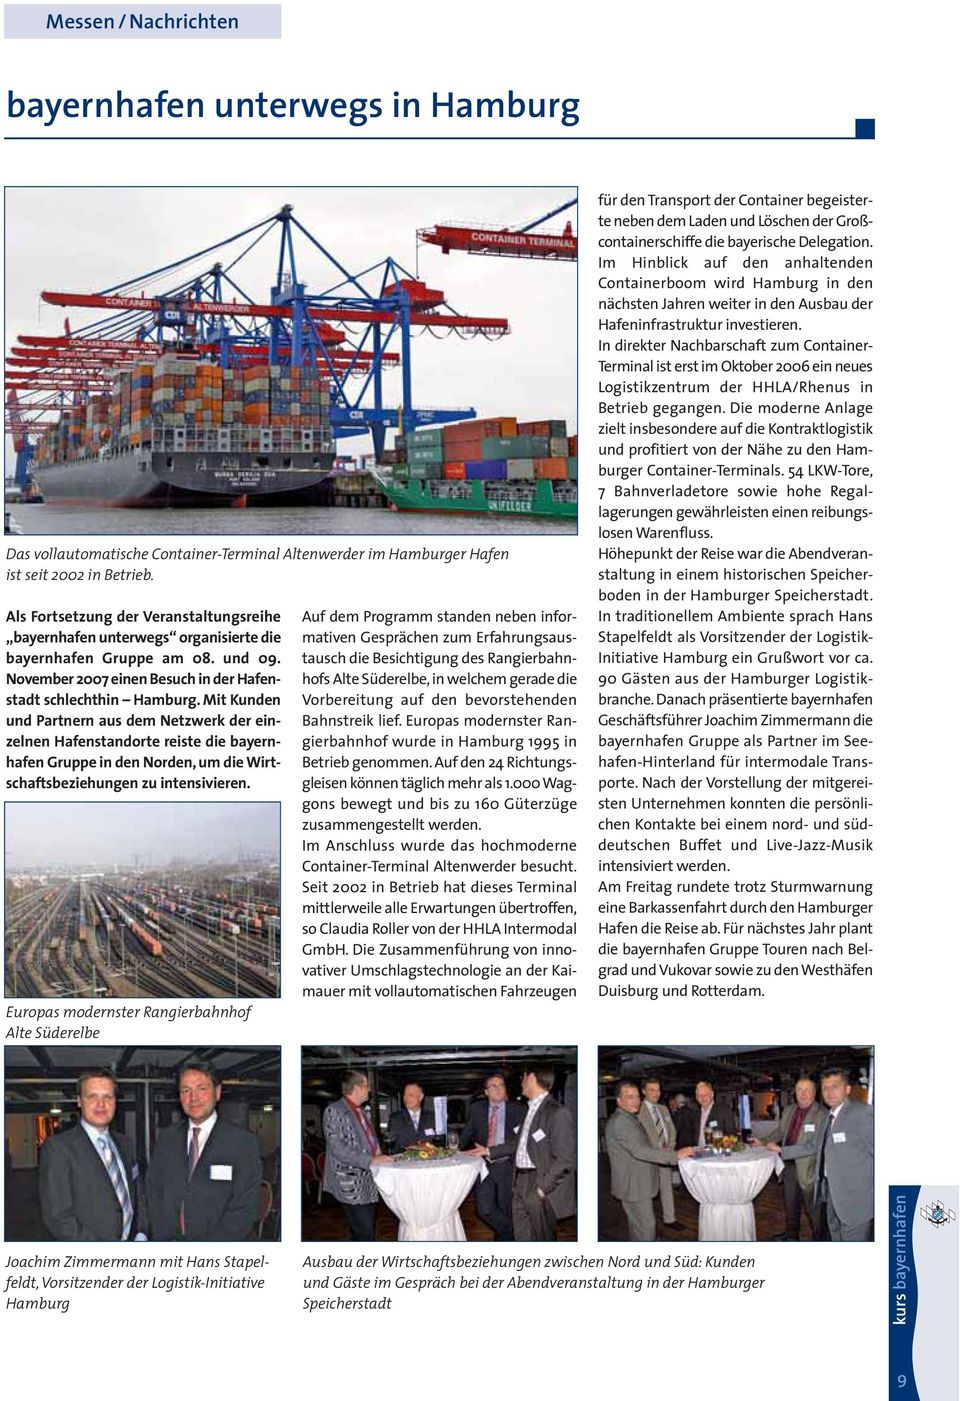 Mit Kunden und Partnern aus dem Netzwerk der einzelnen Hafenstandorte reiste die bayernhafen Gruppe in den Norden, um die Wirtschaftsbeziehungen zu intensivieren.